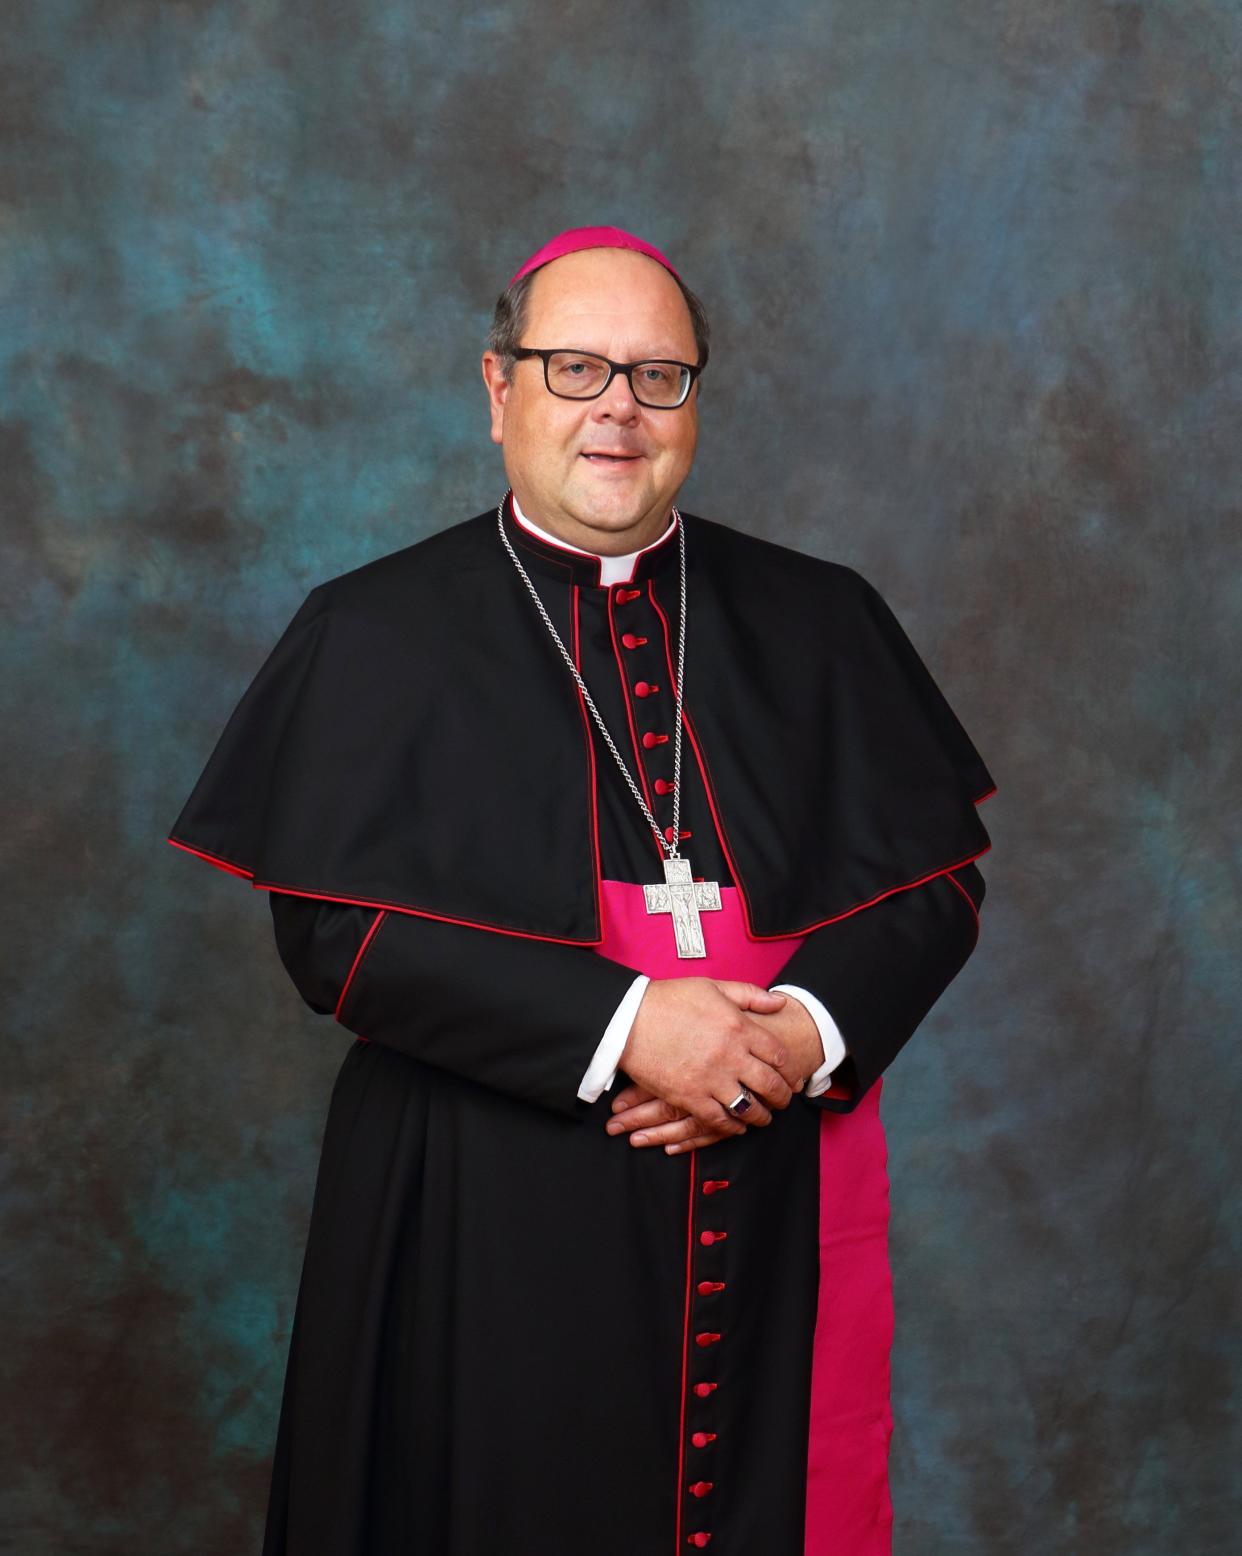 Bishop Edward C. Malesic of the Catholic Diocese of Cleveland